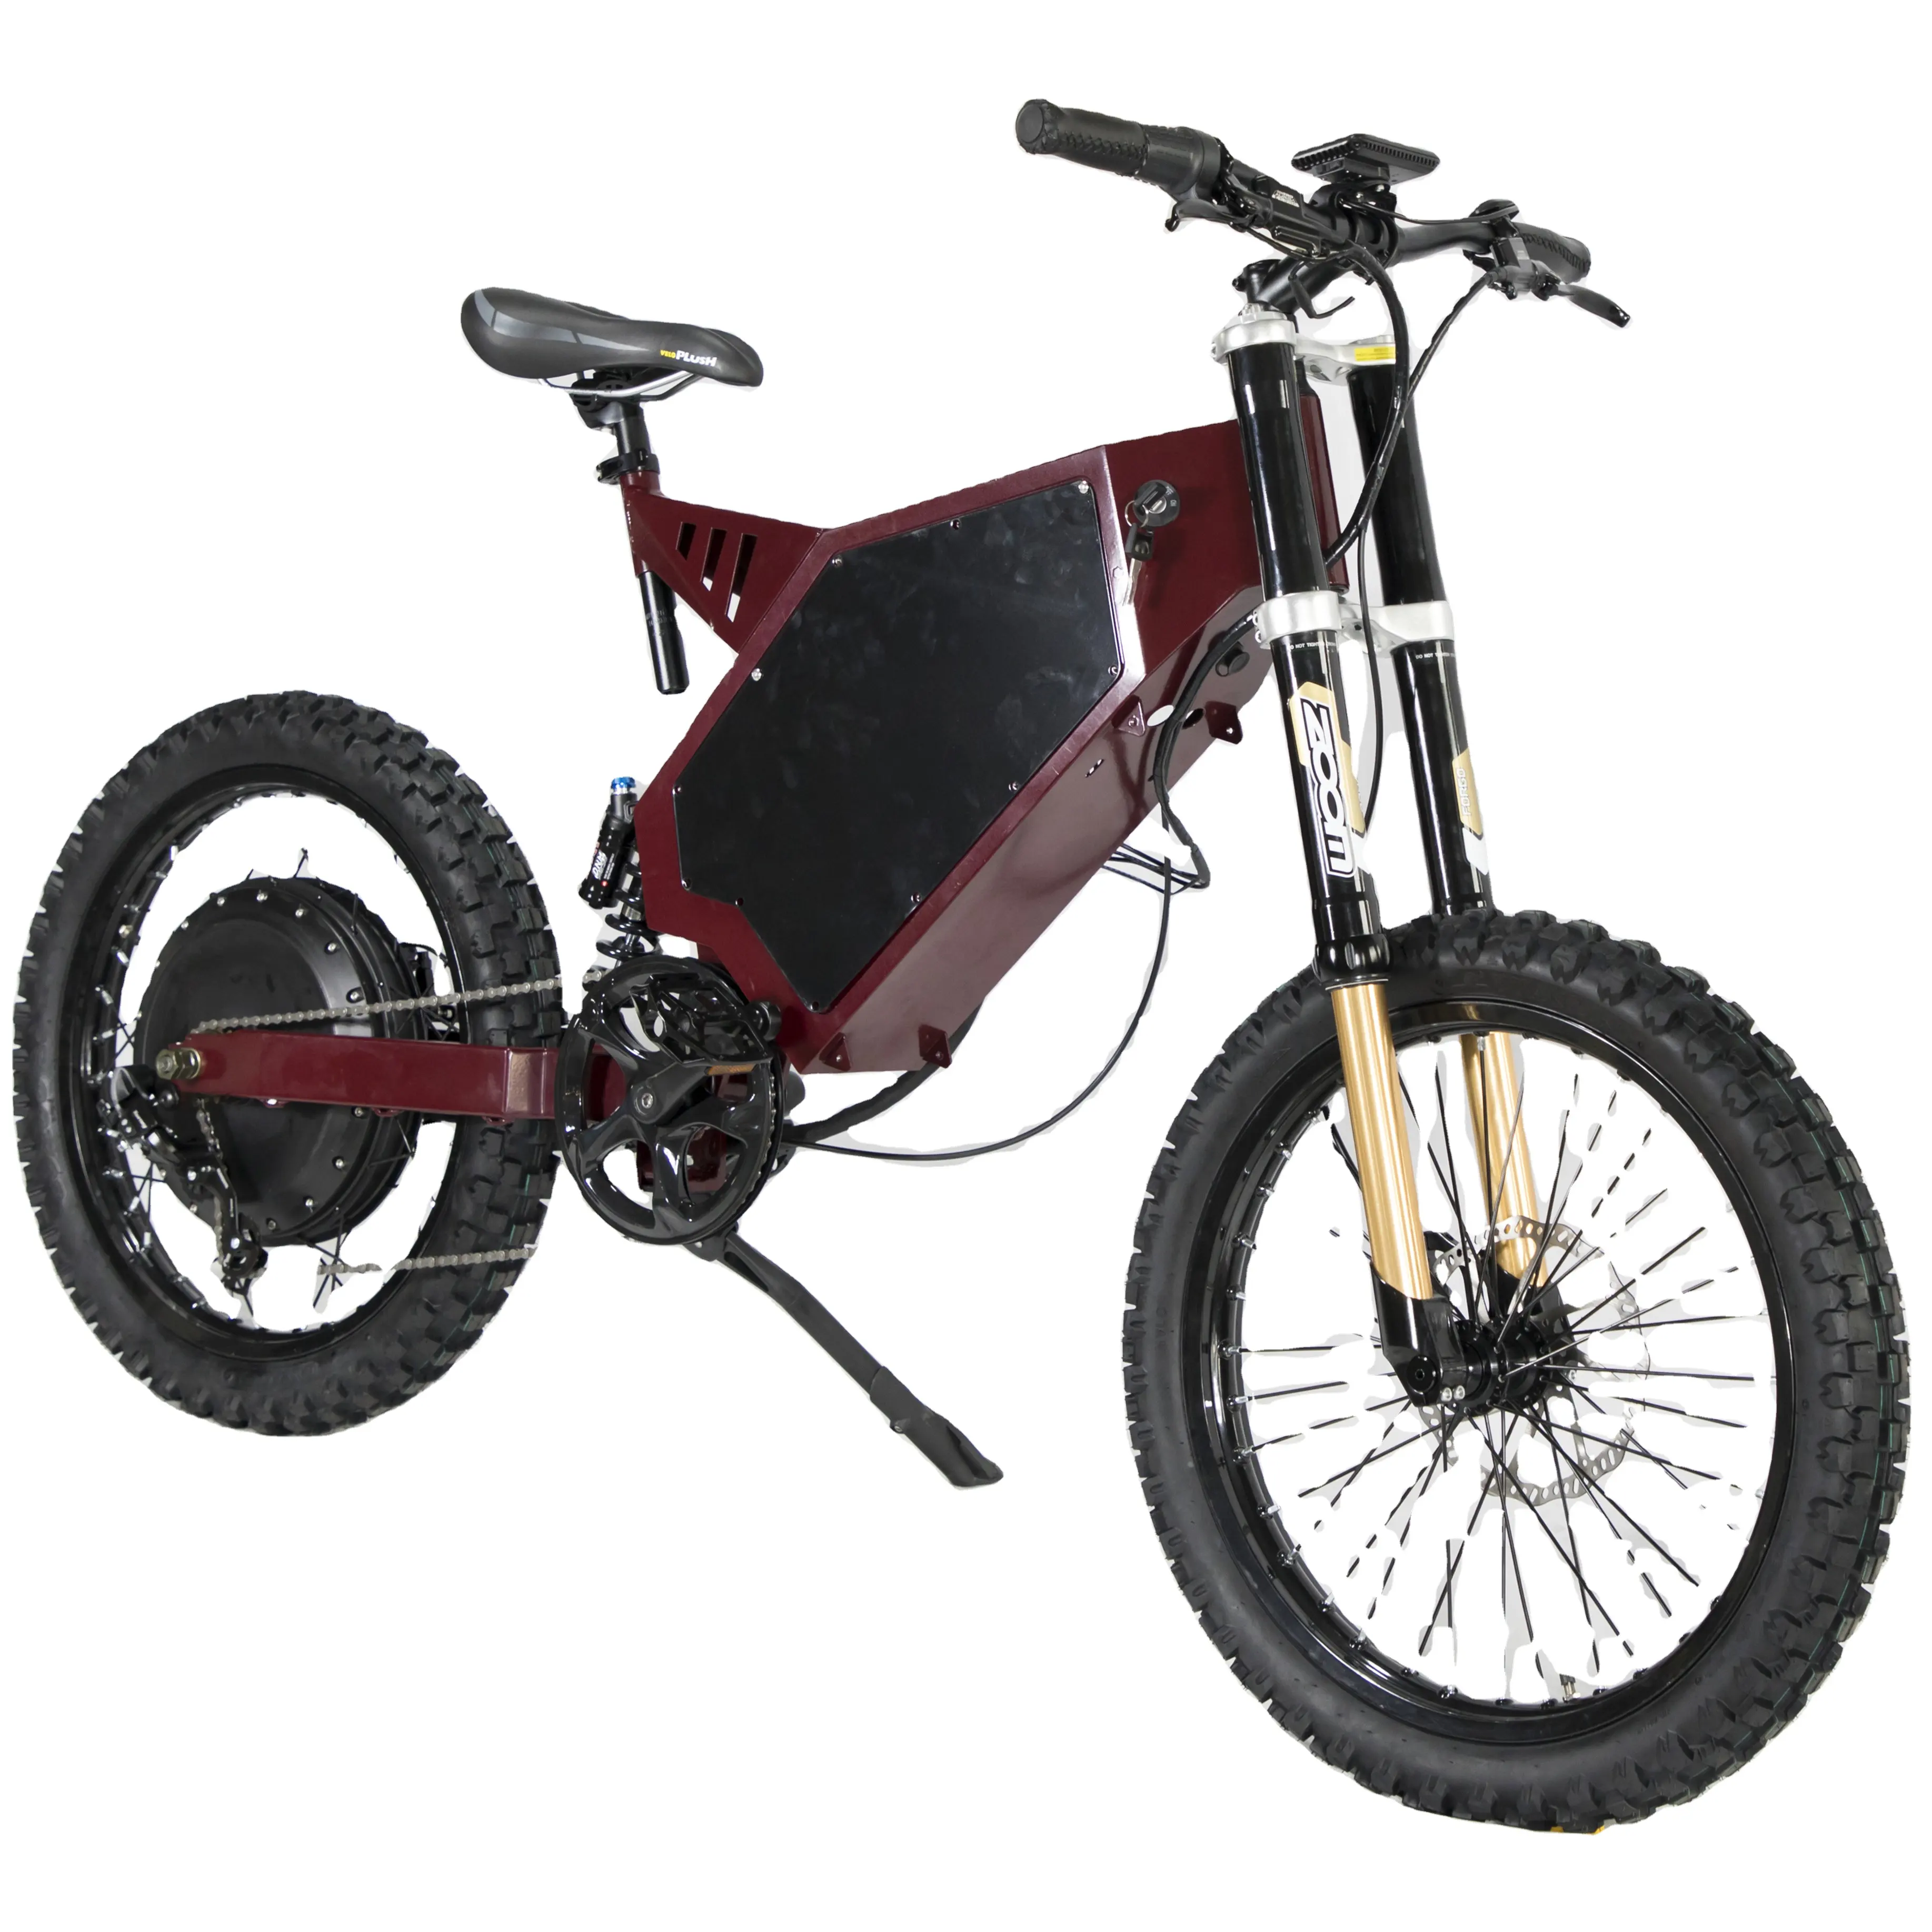 बिजली साइकिल चोरी बॉम्बर इलेक्ट्रिक बाइक के साथ मजबूत वसा टायर बाइक बैटरी ebike 48v 3000w